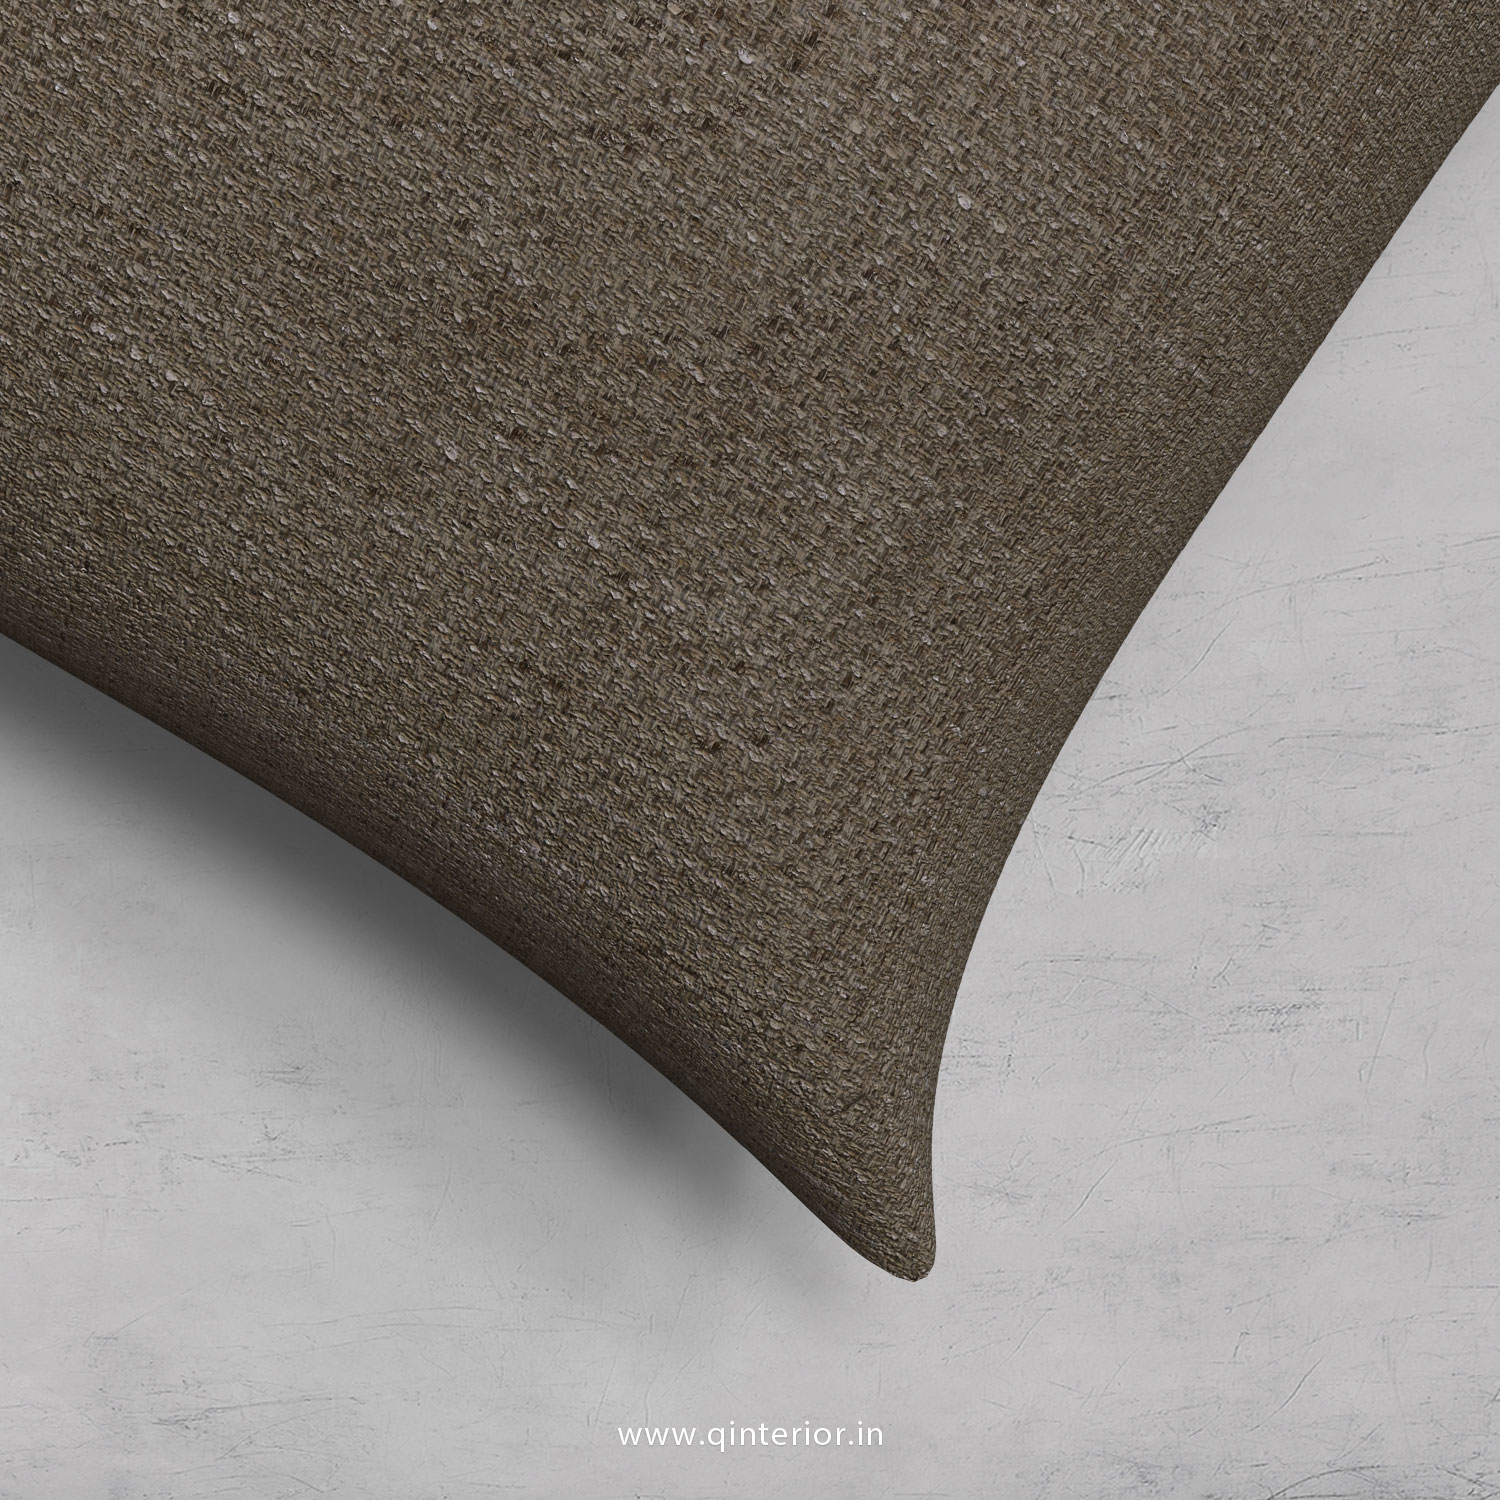 Cushion With Cushion Cover in Cotton Plain - CUS001 CP11